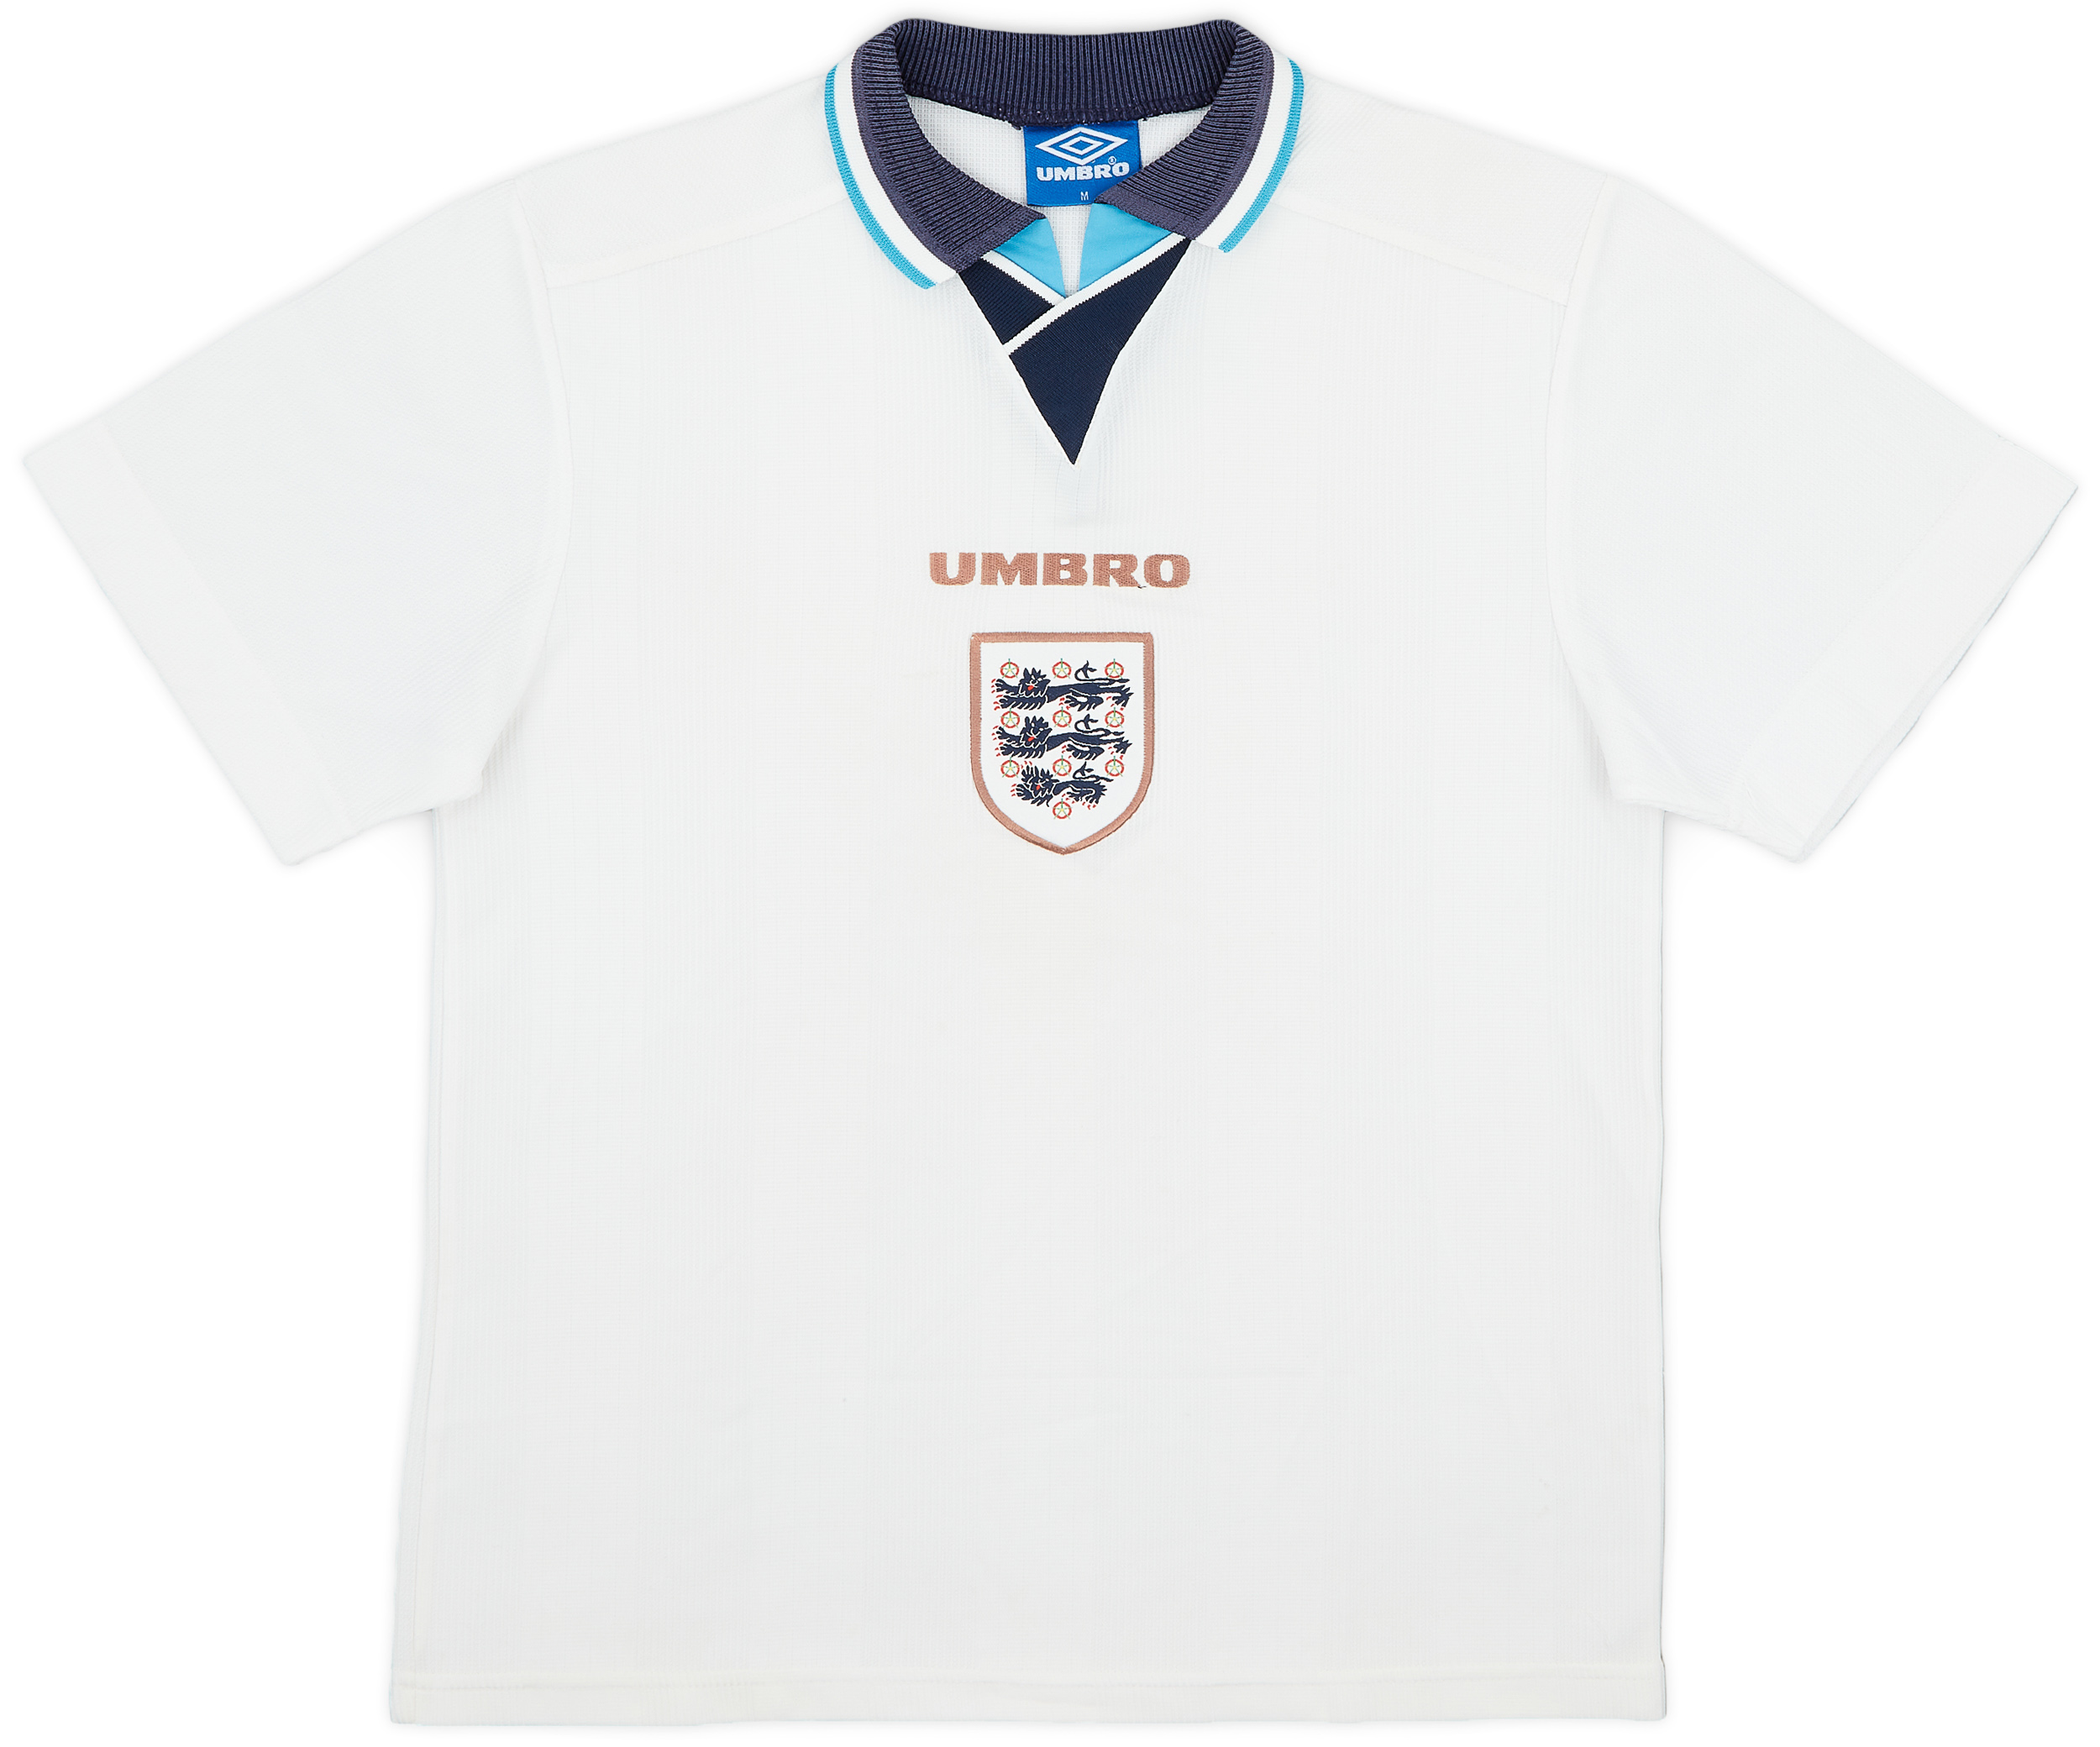 1995-97 England Home Shirt - 5/10 - ()